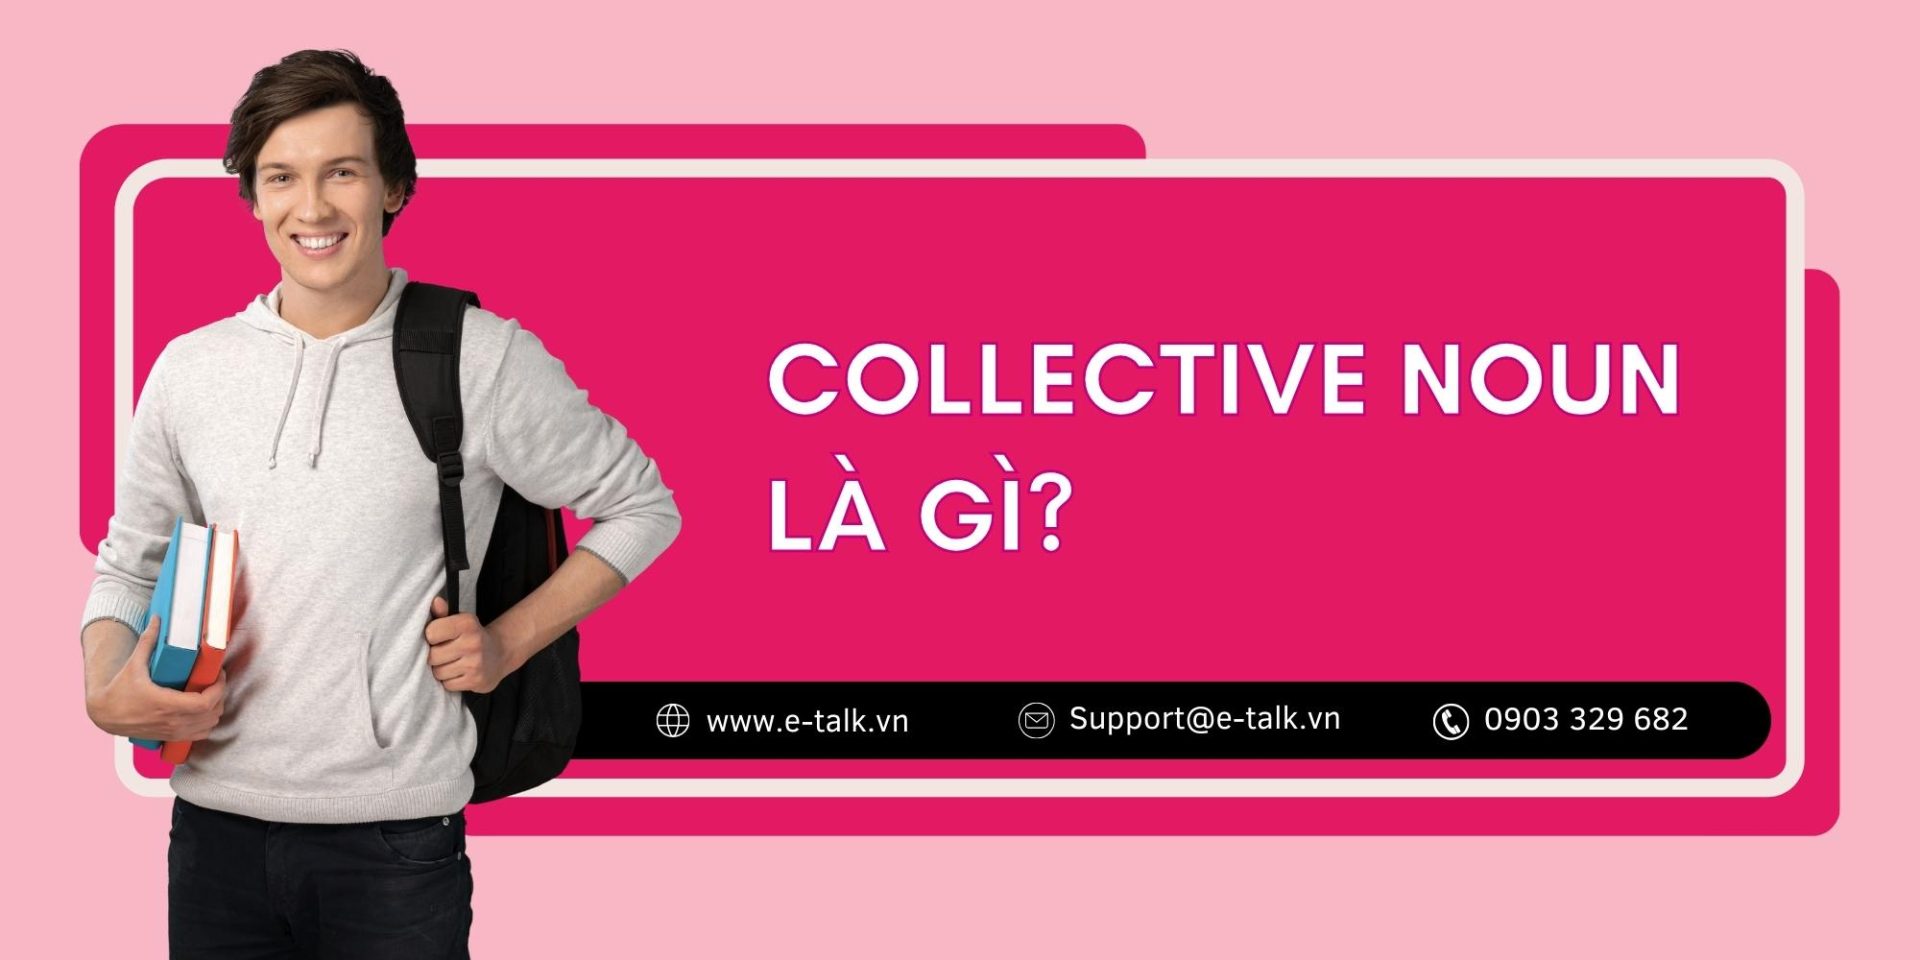 Collective noun là gì?